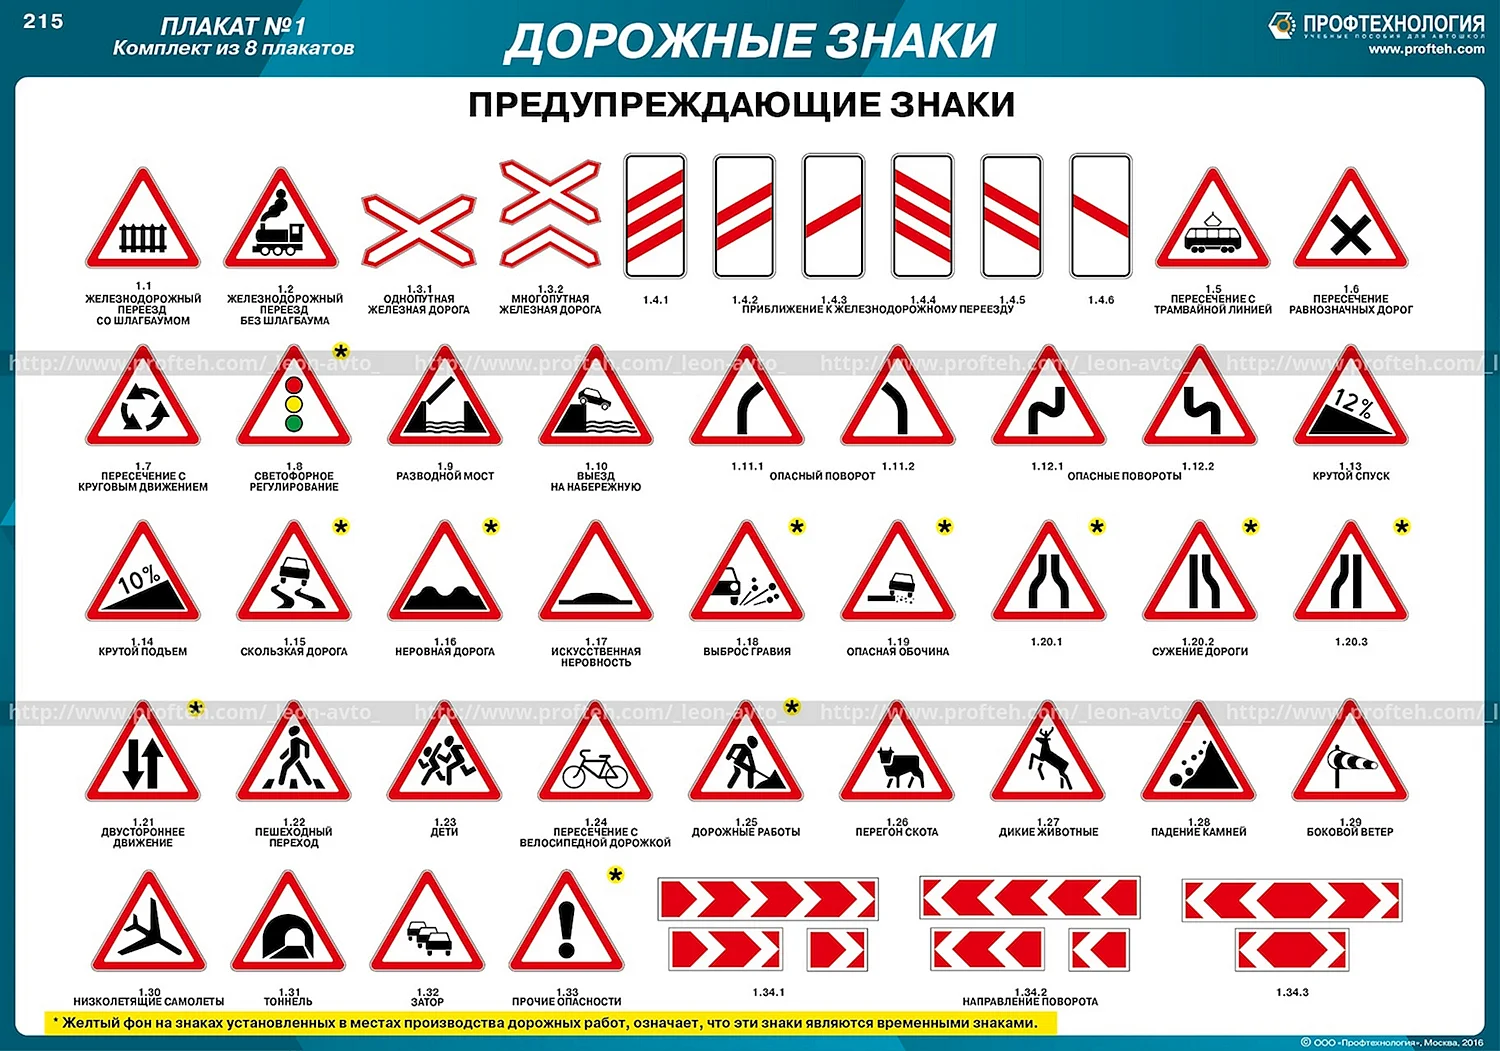 Дорожные знаки 2018 с пояснениями и обозначениями предупреждающие